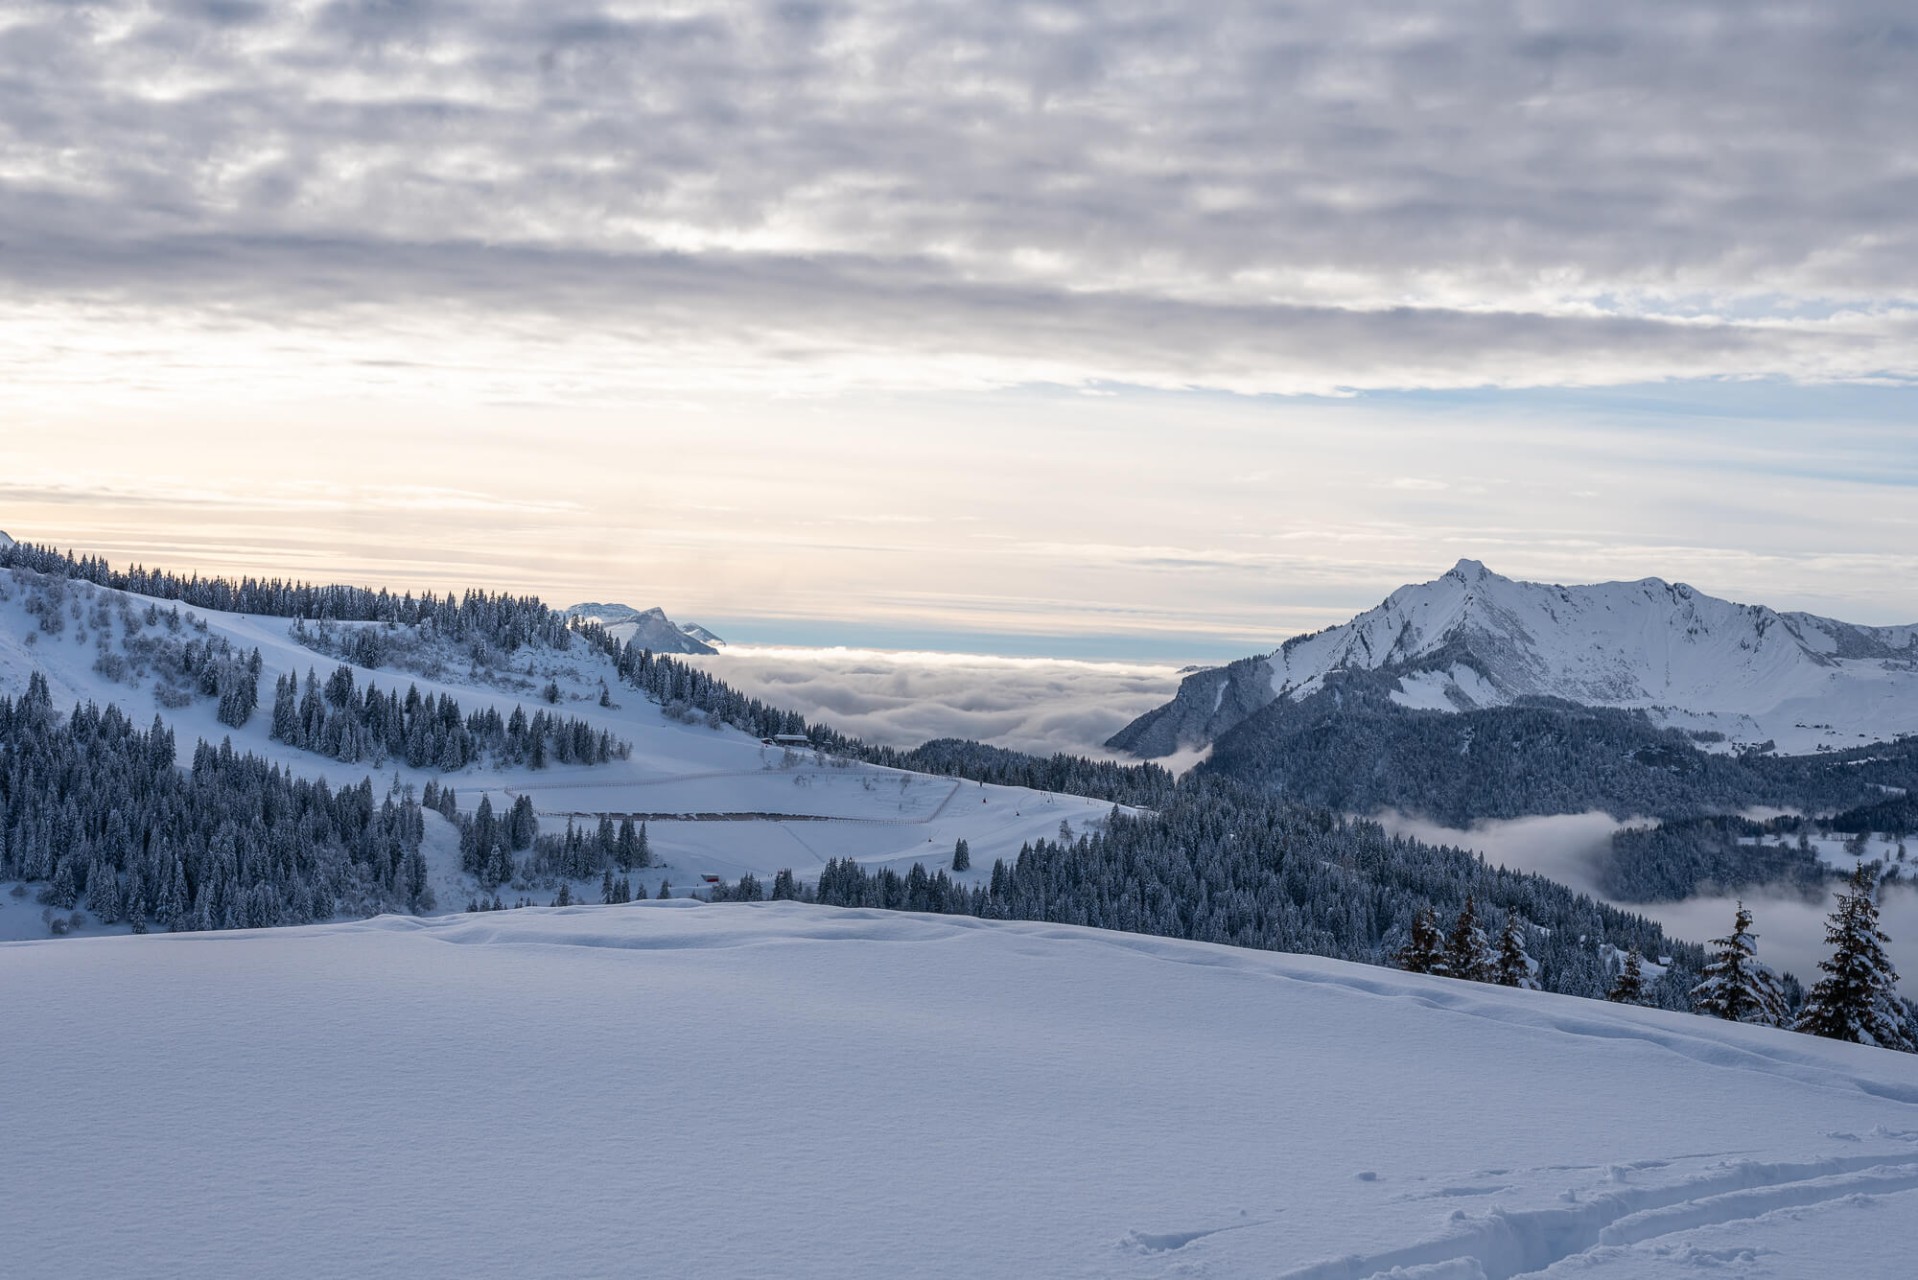 Liberté en ski de randonnée aux Gets - Photos du jour